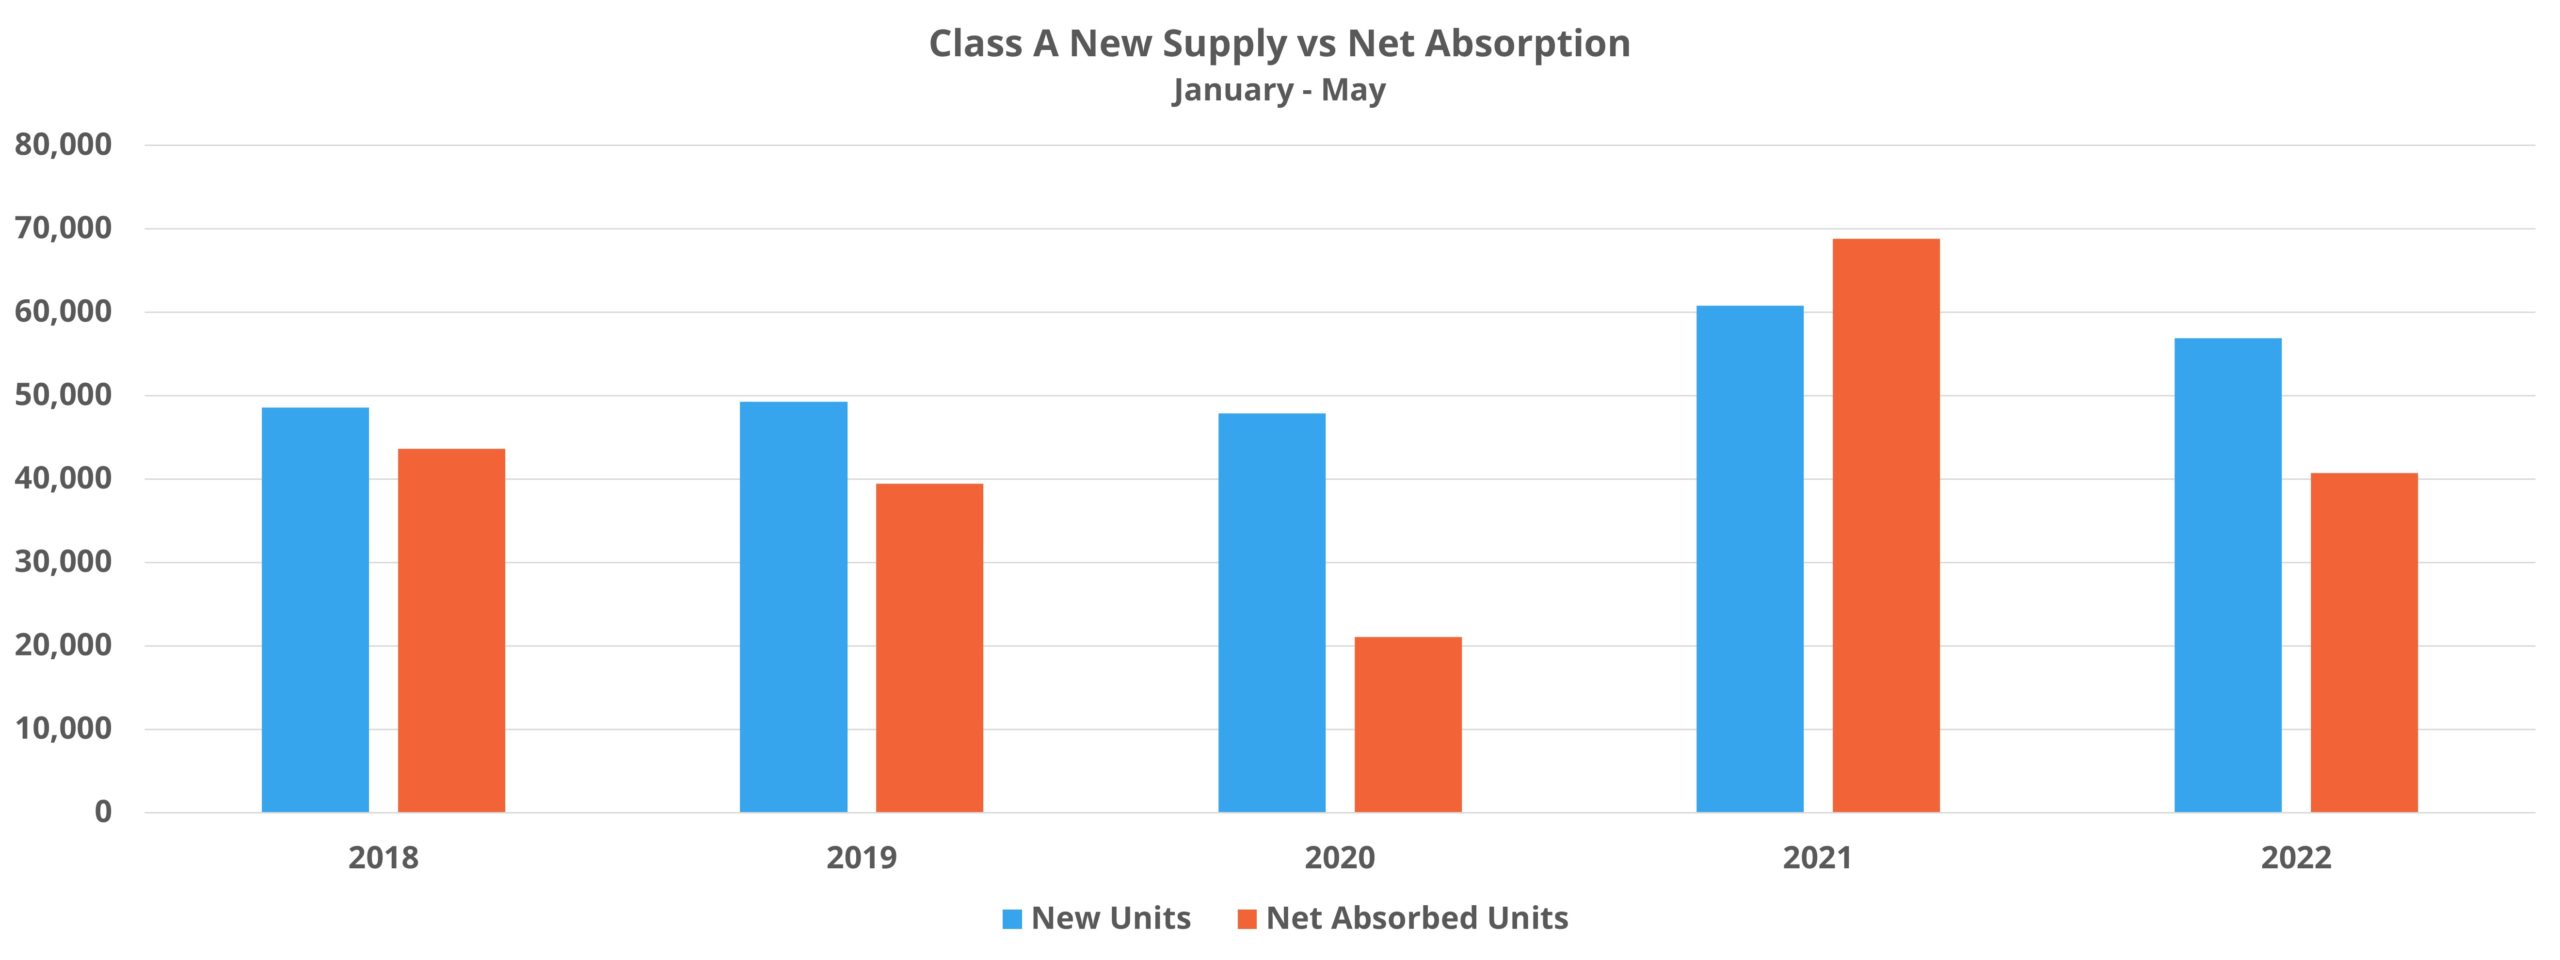 Class A New Supply vs Net Absorption